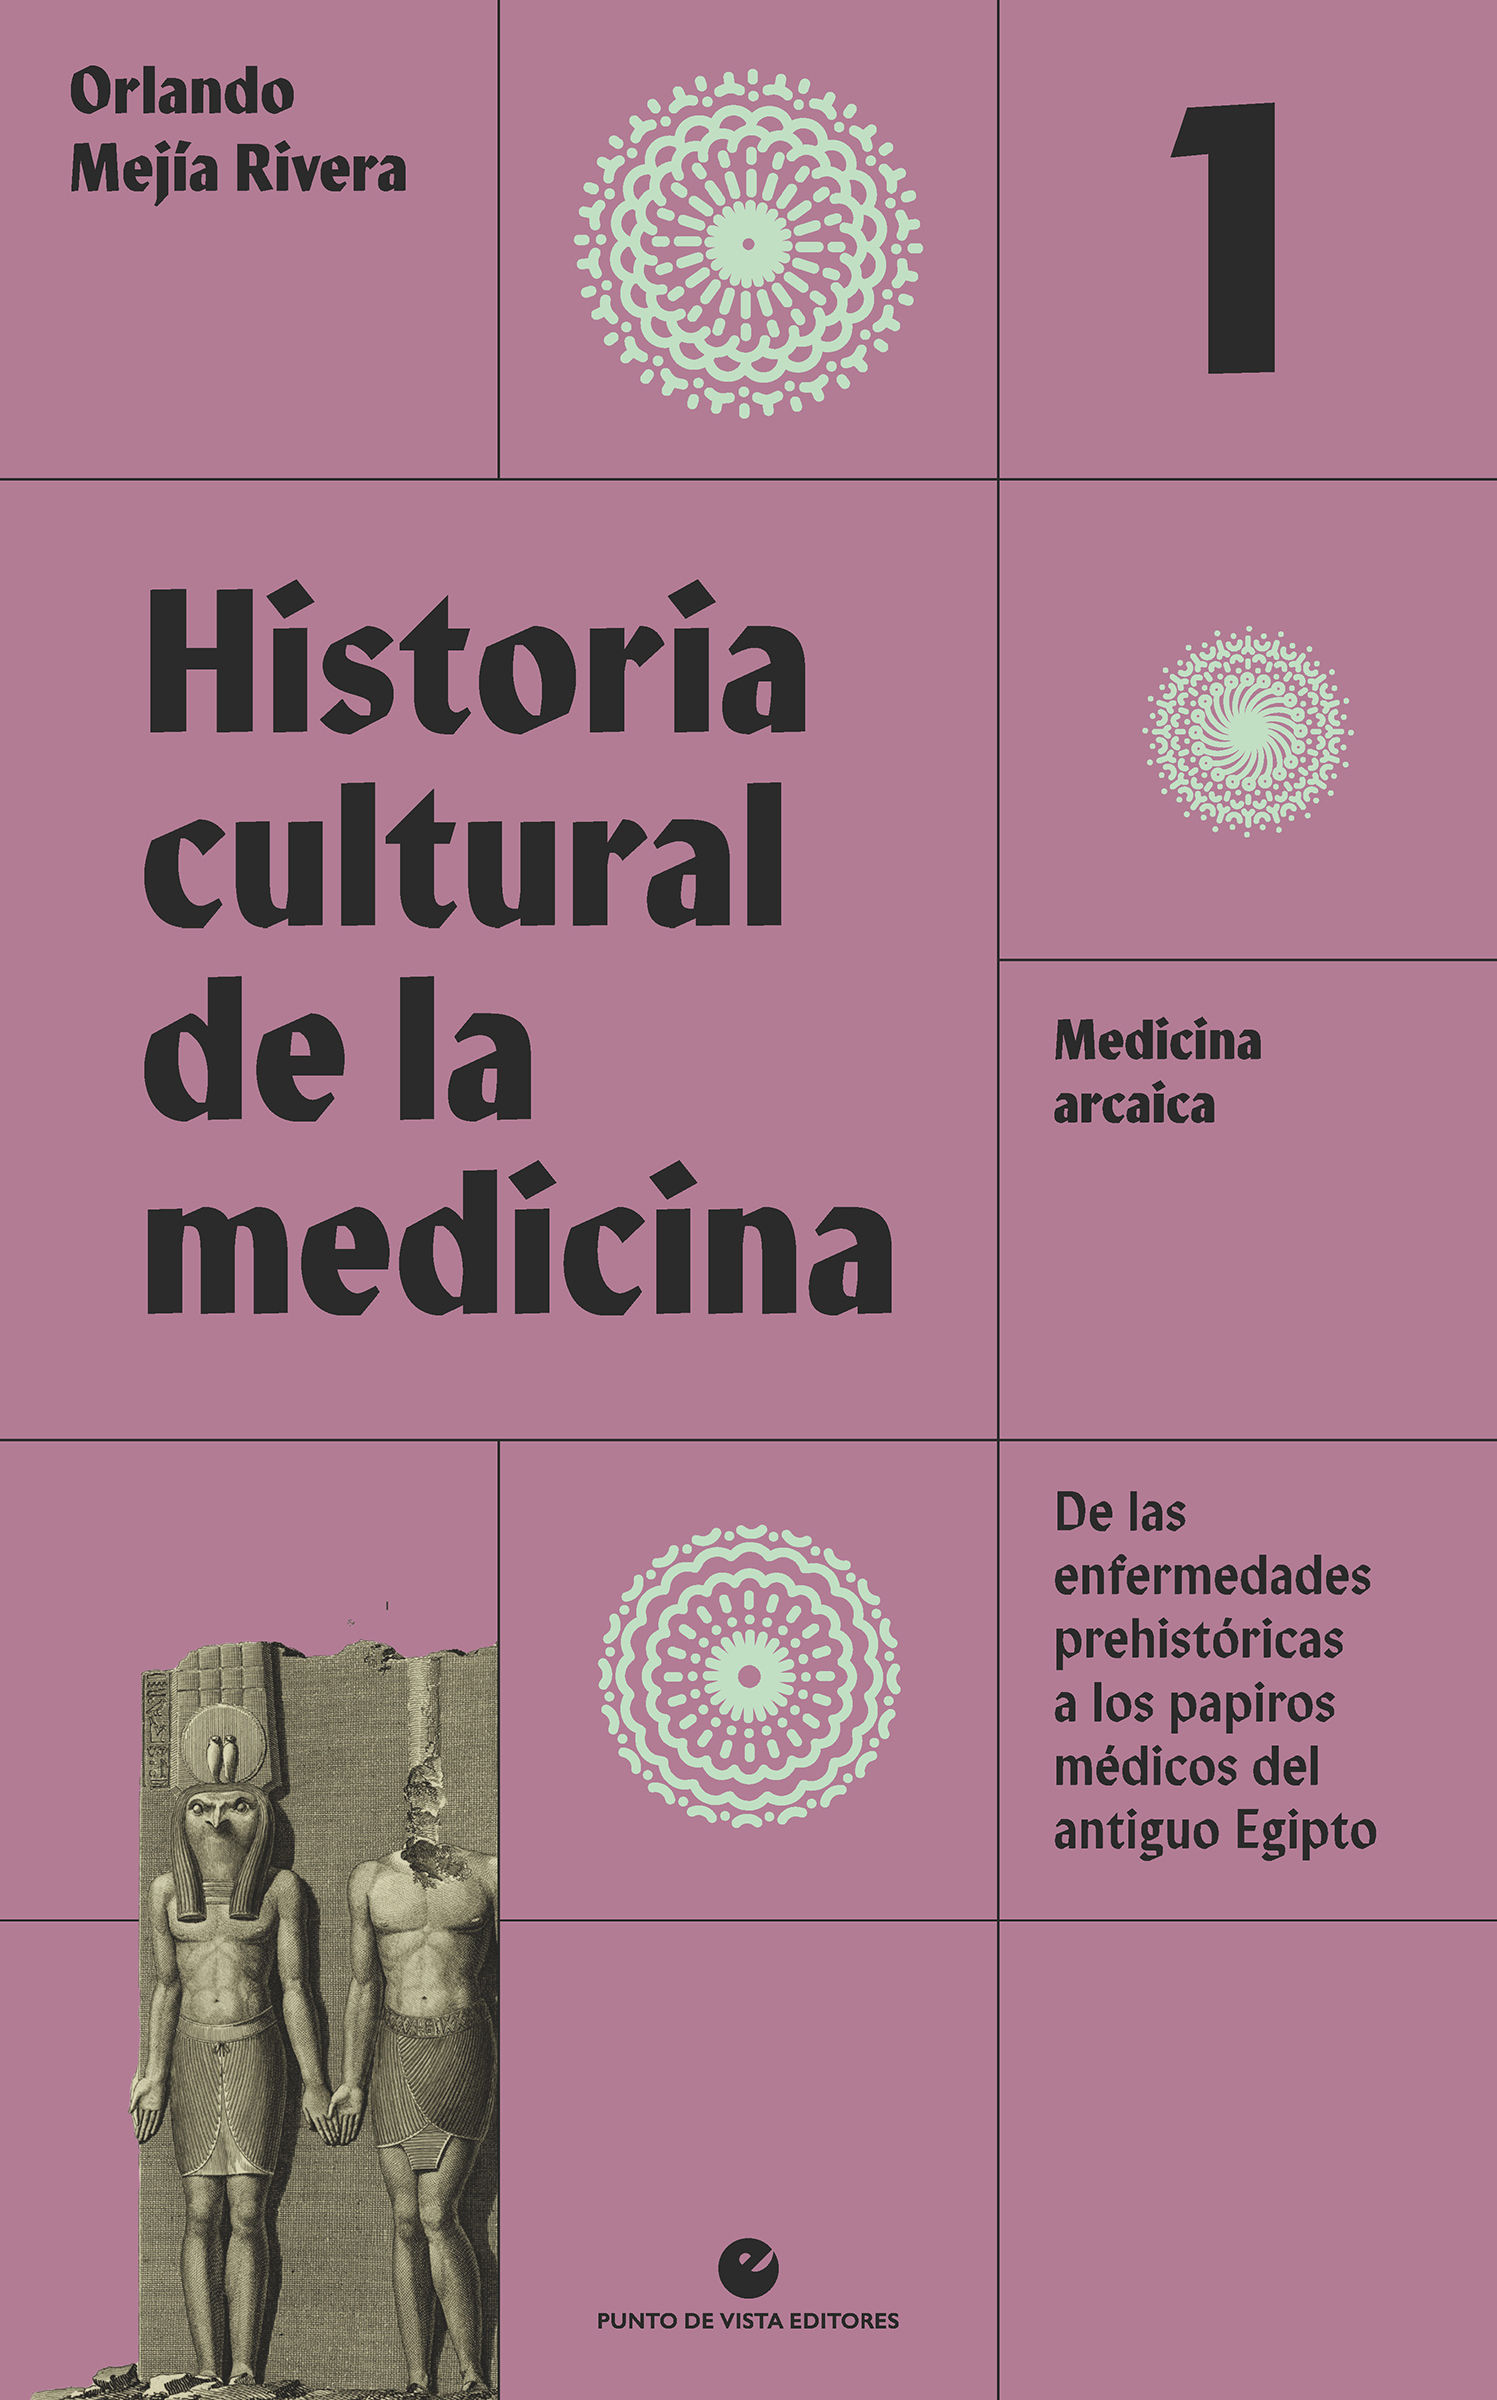 HISTORIA CULTURAL DE LA MEDICINA. VOL. 1